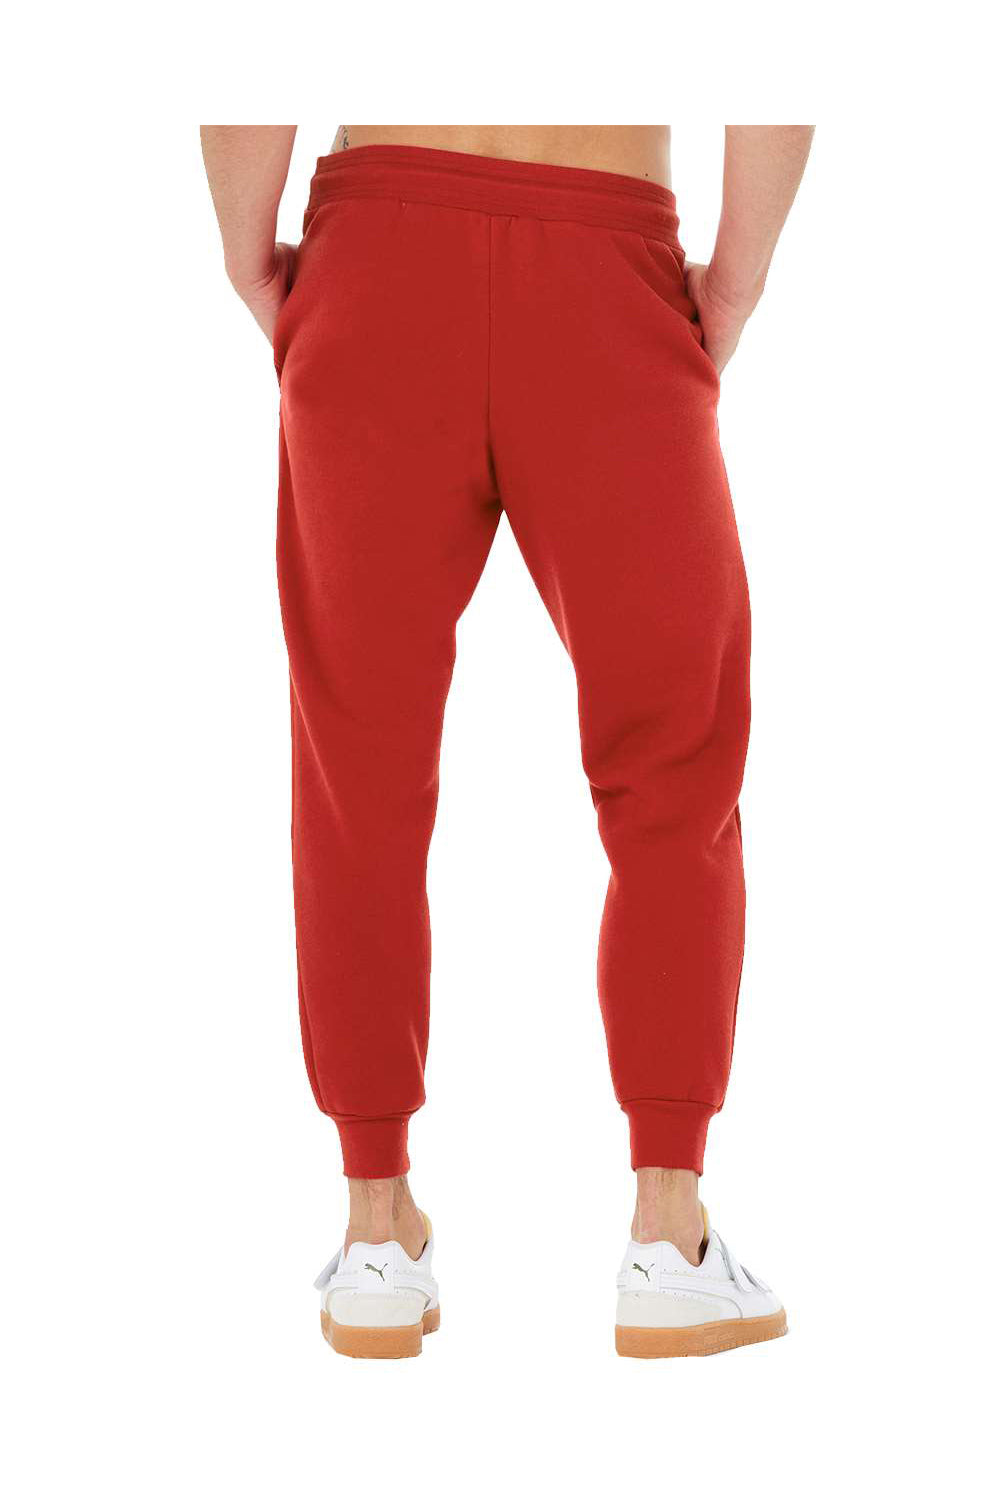 Bella + Canvas BC3727 Mens Jogger Sweatpants w/ Pockets Red Flat Back